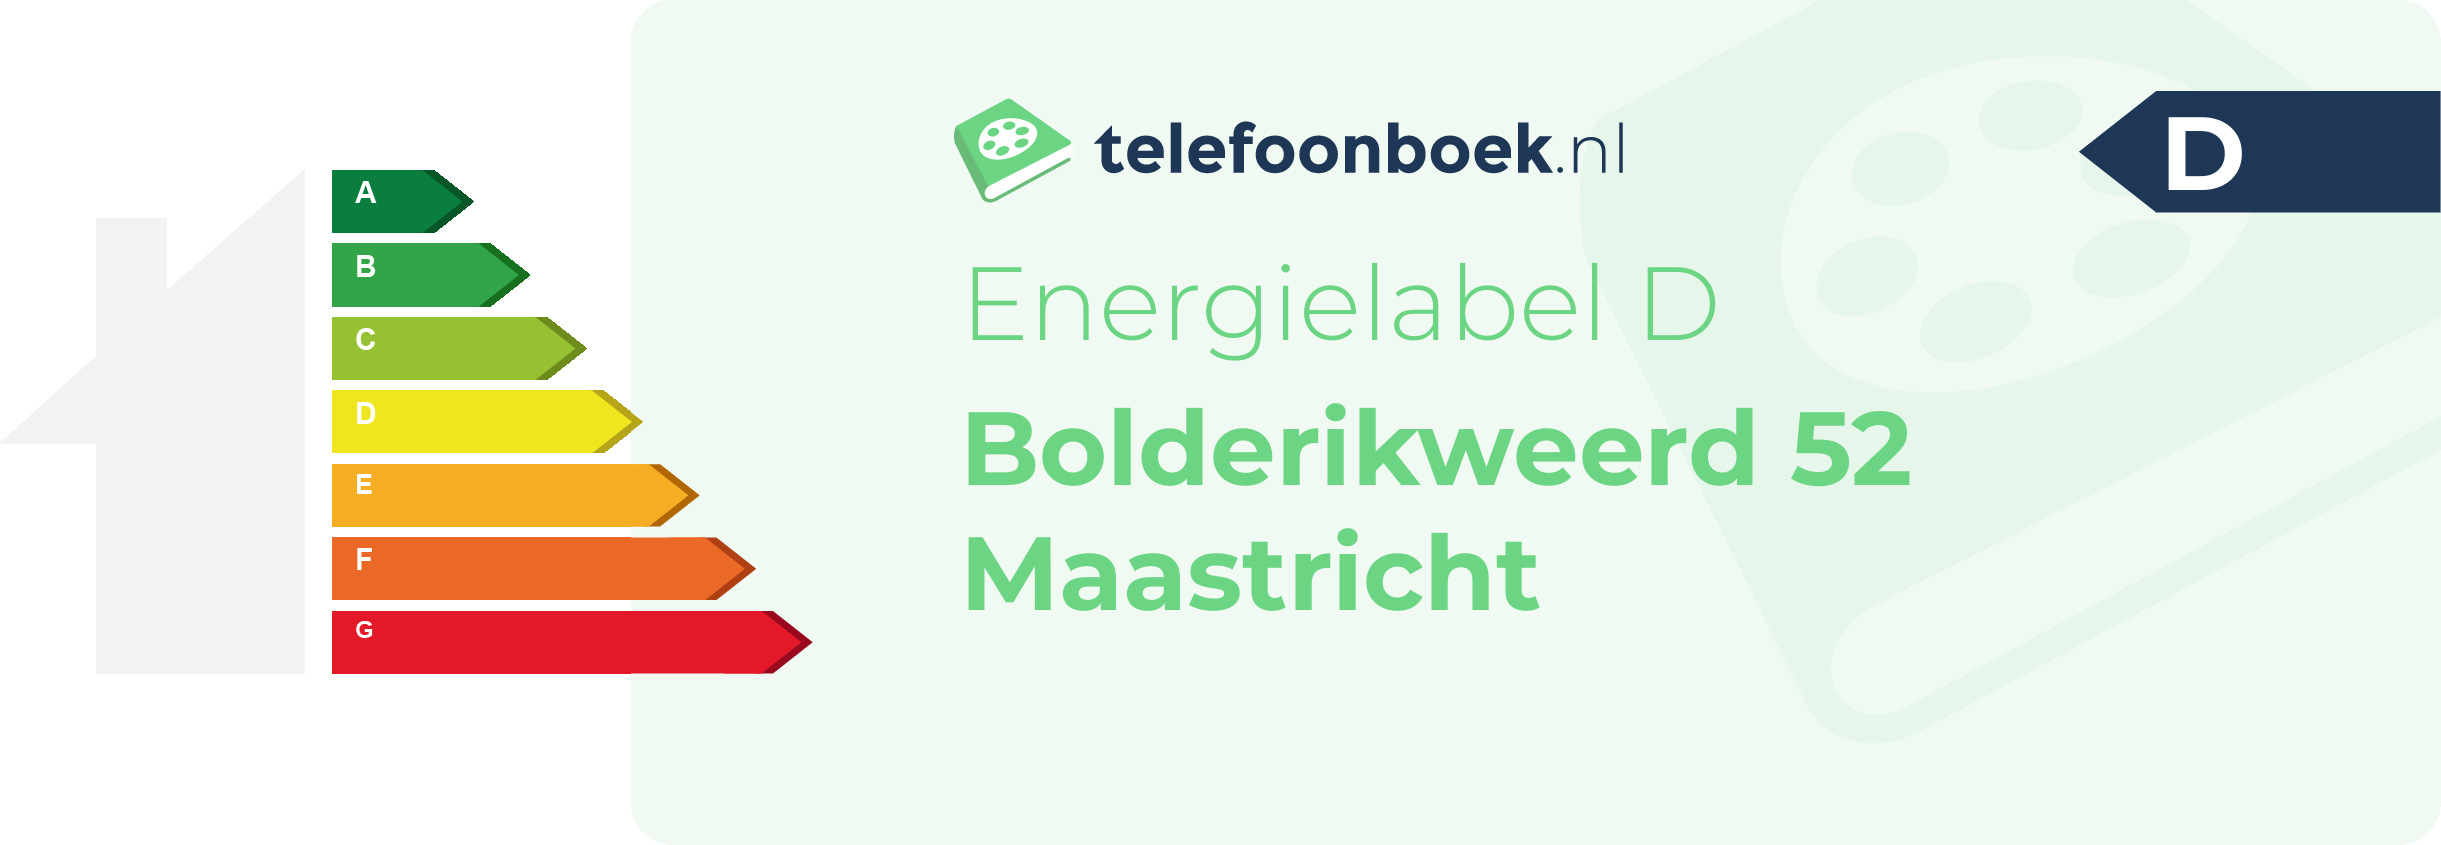 Energielabel Bolderikweerd 52 Maastricht